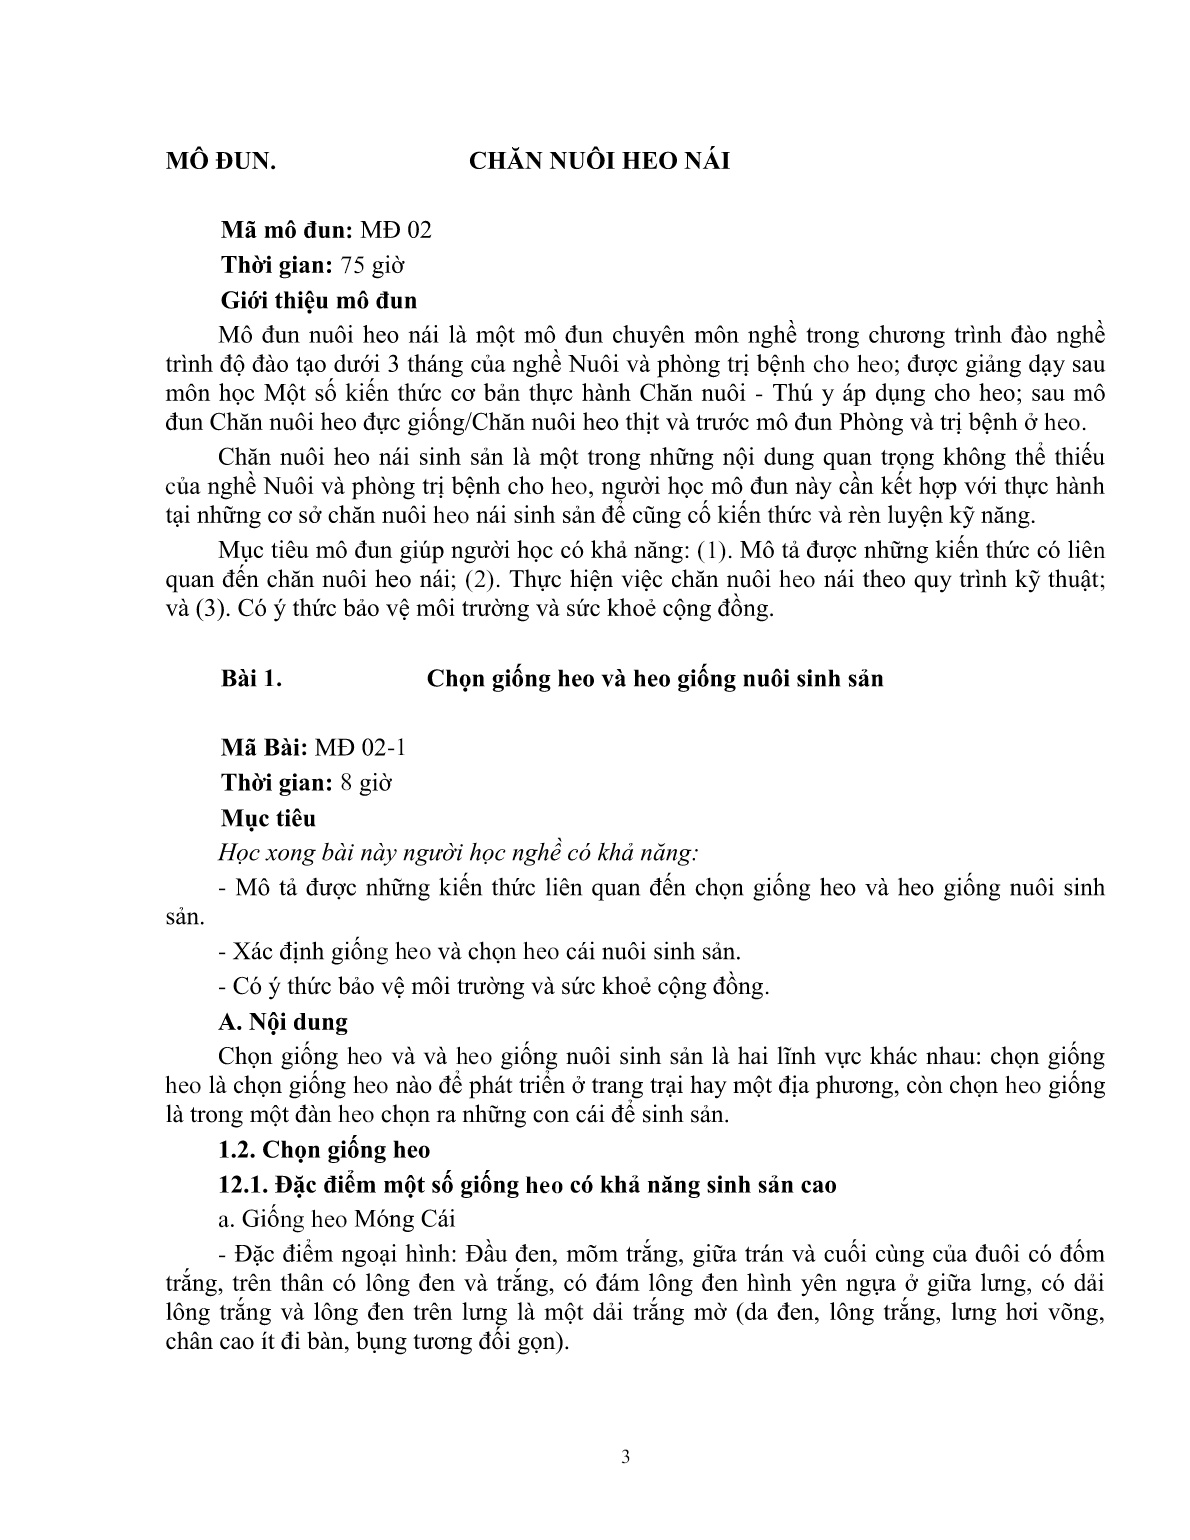 Giáo trình mô đun Chăn nuôi heo nái (Trình độ: Đào tạo dưới 3 tháng) trang 4